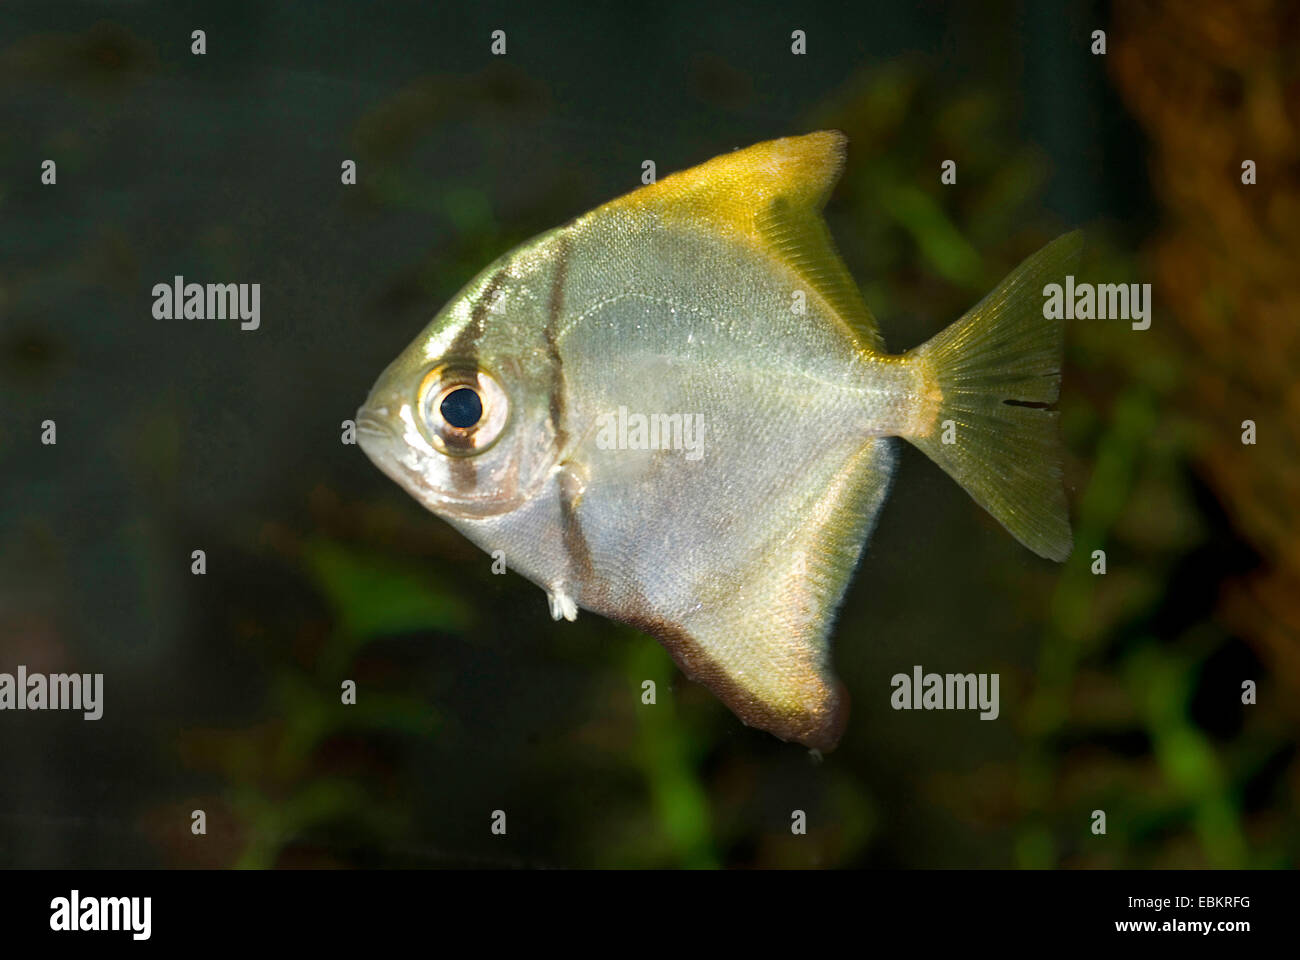 Mono, argent, fingerfish diamondfish, moonfish, kilefish, dorades de beurre, l'argent moony (Monodactylus argenteus), natation Banque D'Images